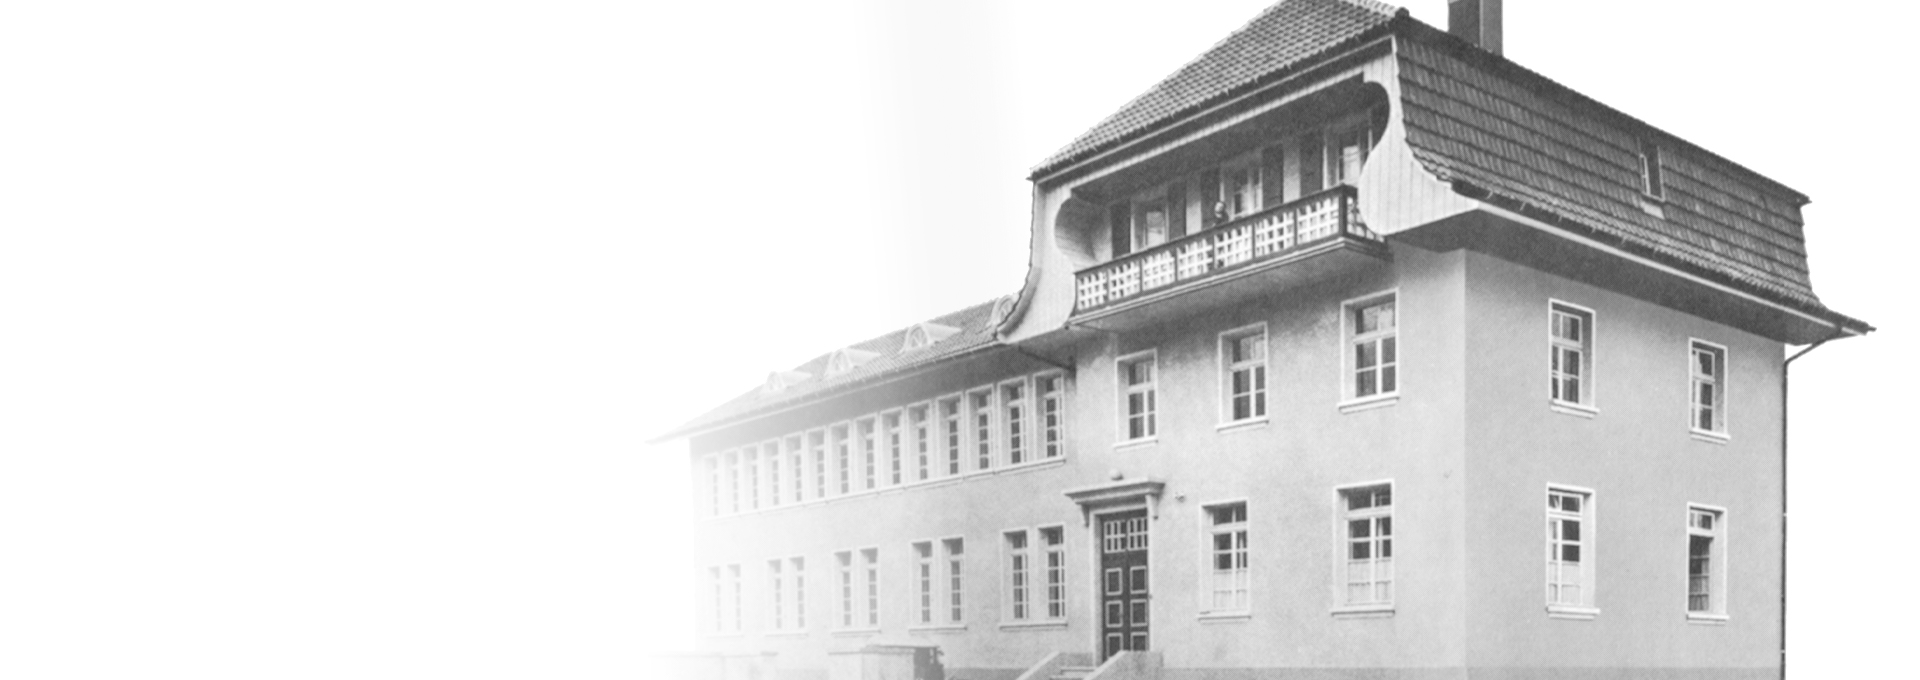 Gammelt sort-hvid billede af Bernafons første fabrik i Flamatt i nærheden af Bern i Schweiz, 1925